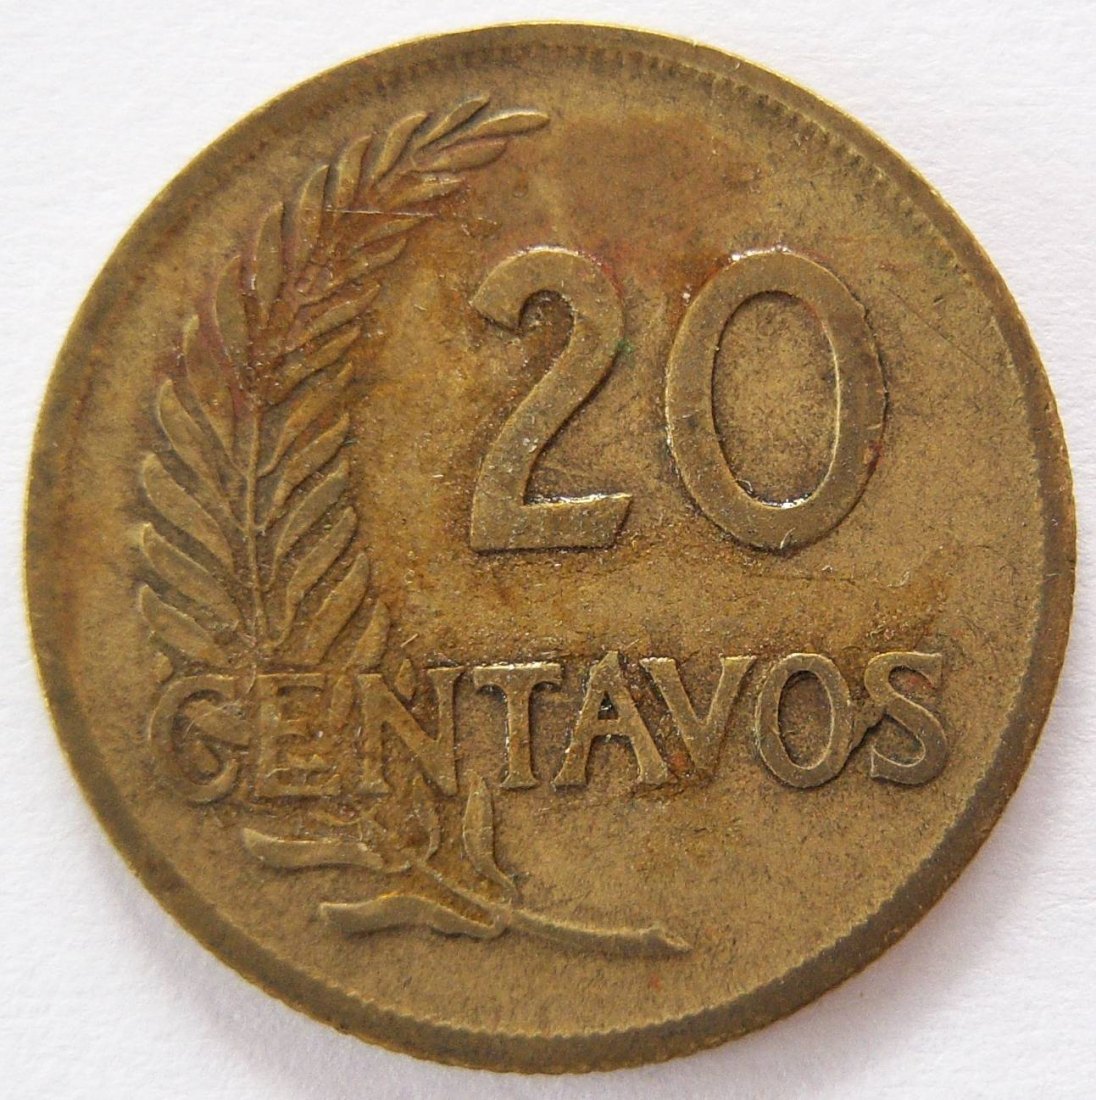  Peru 20 Centavos 1953   